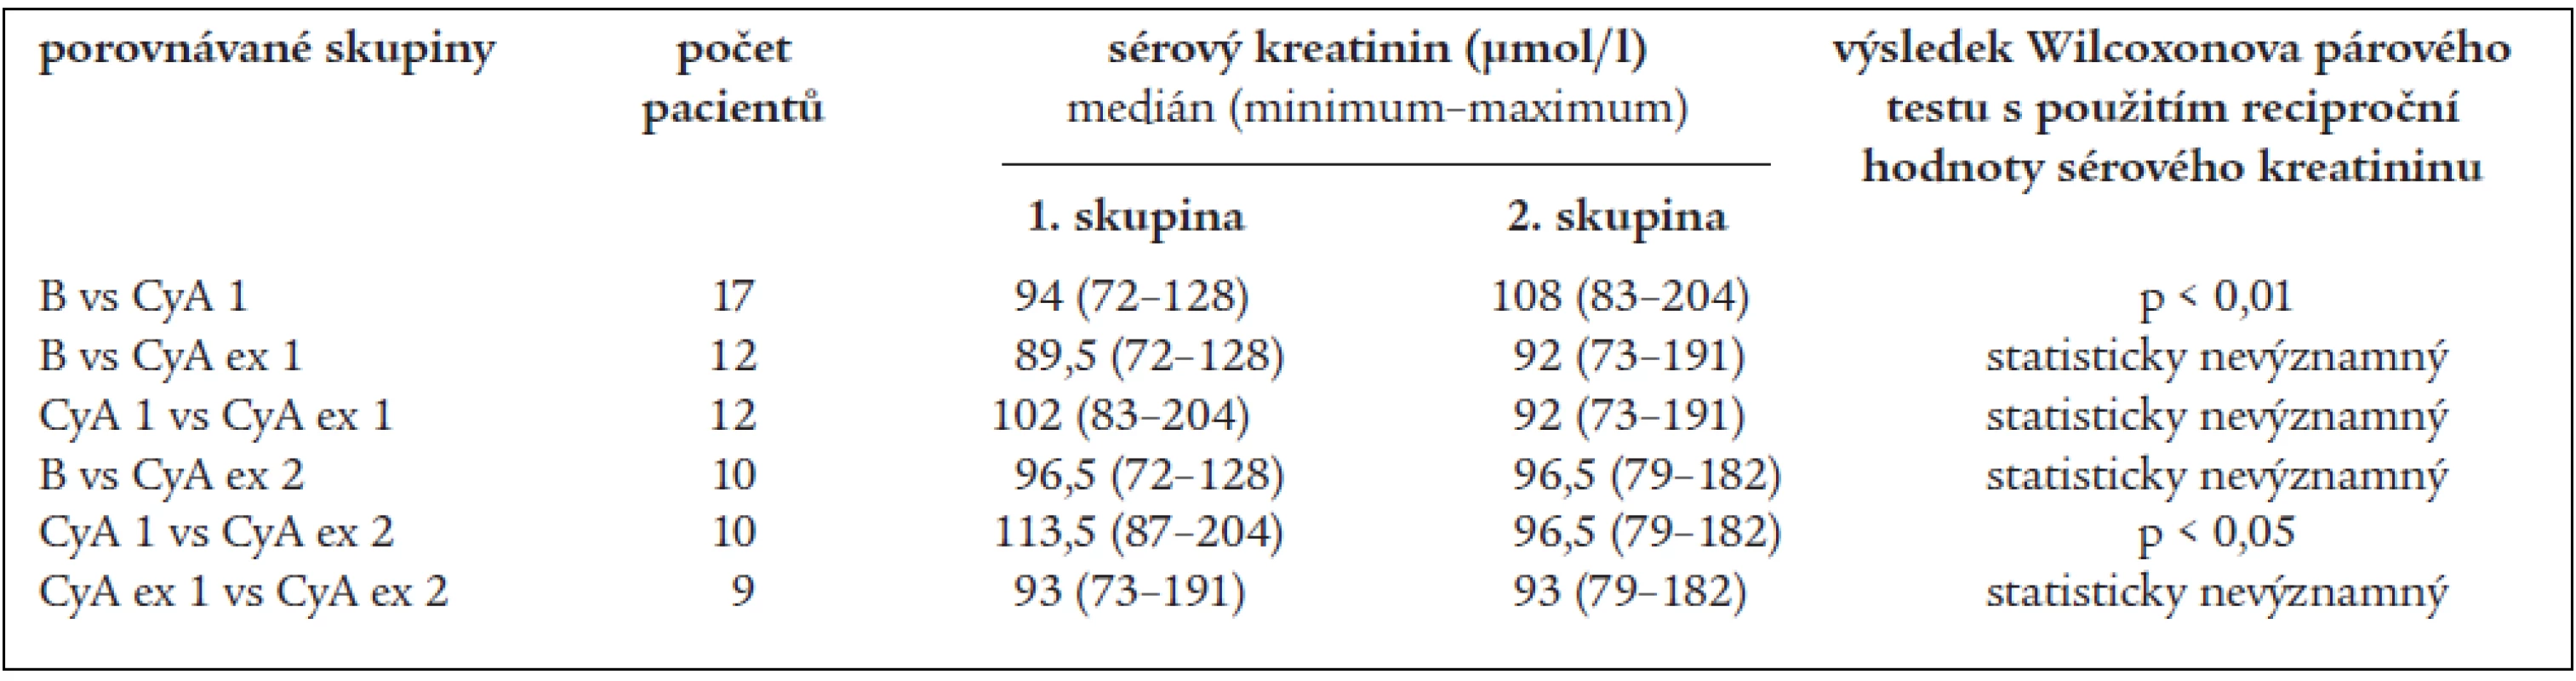 Porovnání hodnot sérového kreatininu (s využitím jeho reciproční hodnoty).